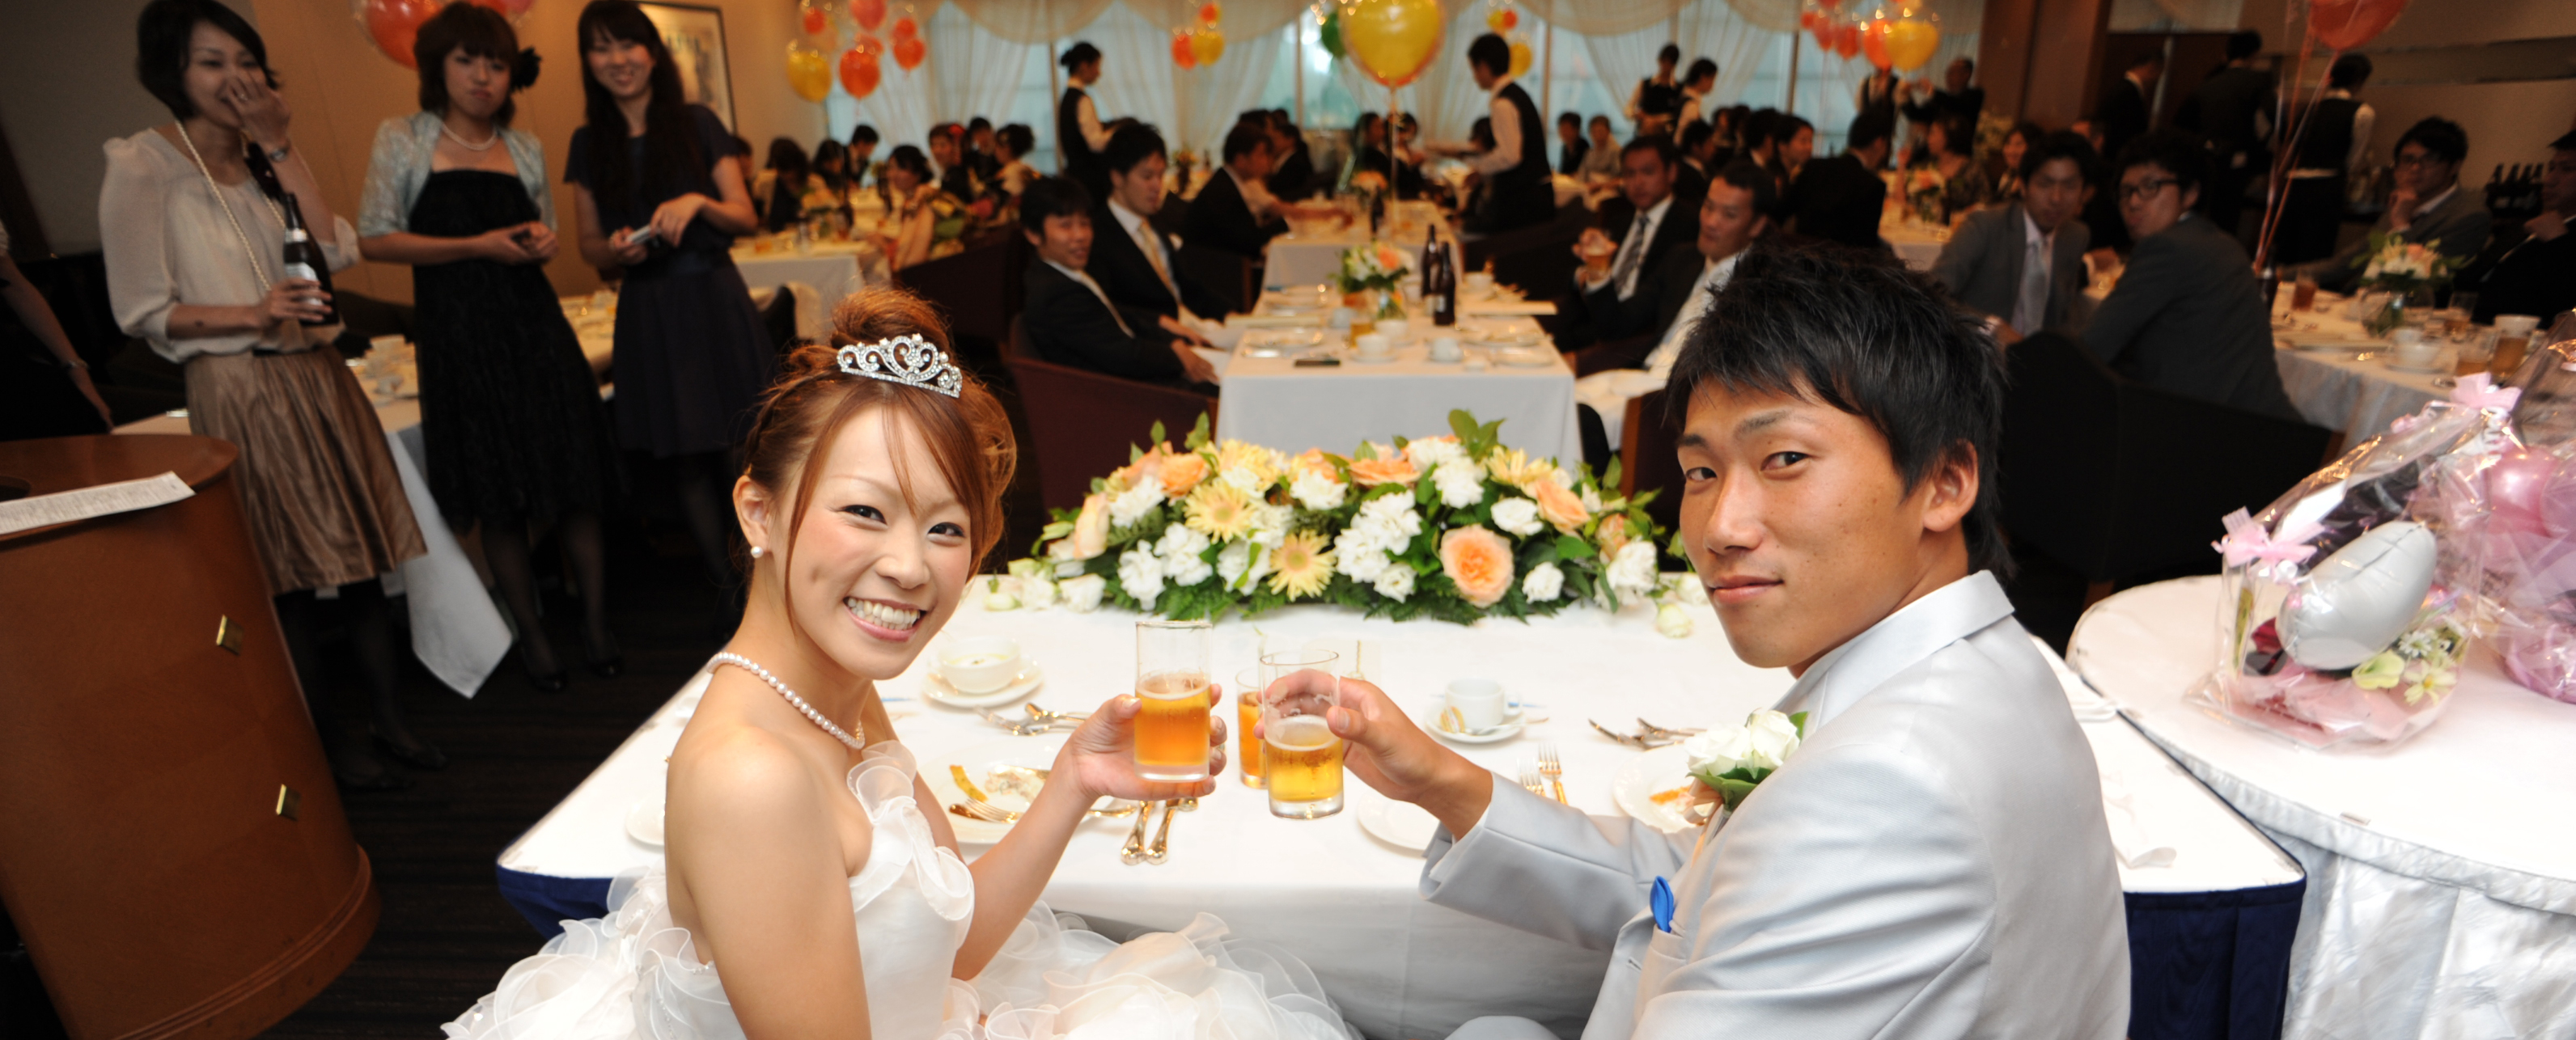 結婚式の二次会やパーティで大人数対応が可能な会場 | World Wedding